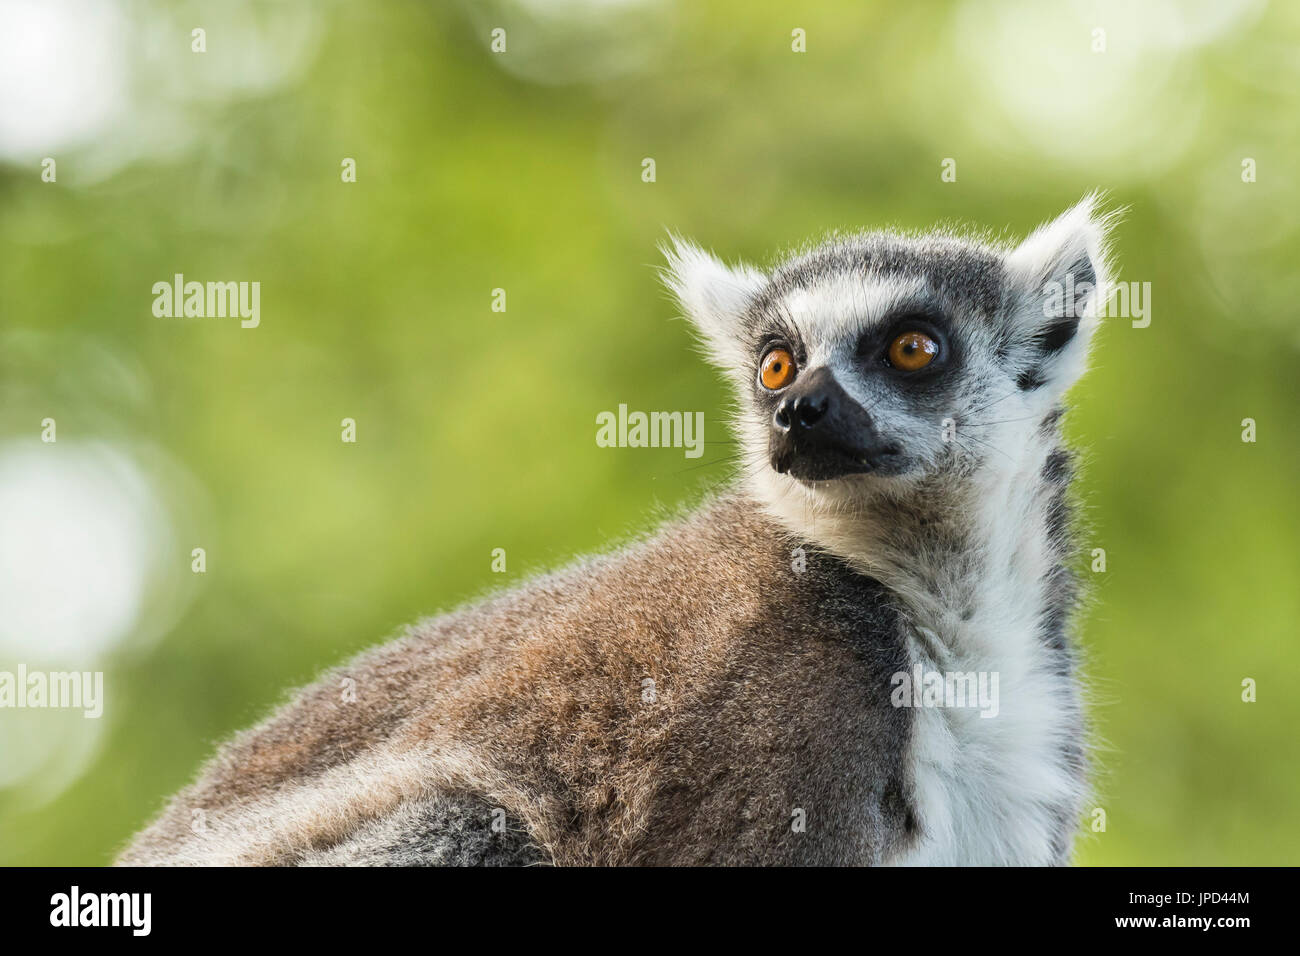 Closeup retrato de un lémur de cola anillada (Lemur catta) encaramado en un árbol en un bosque. Estos primates son nativos de la isla de Madagascar. Foto de stock